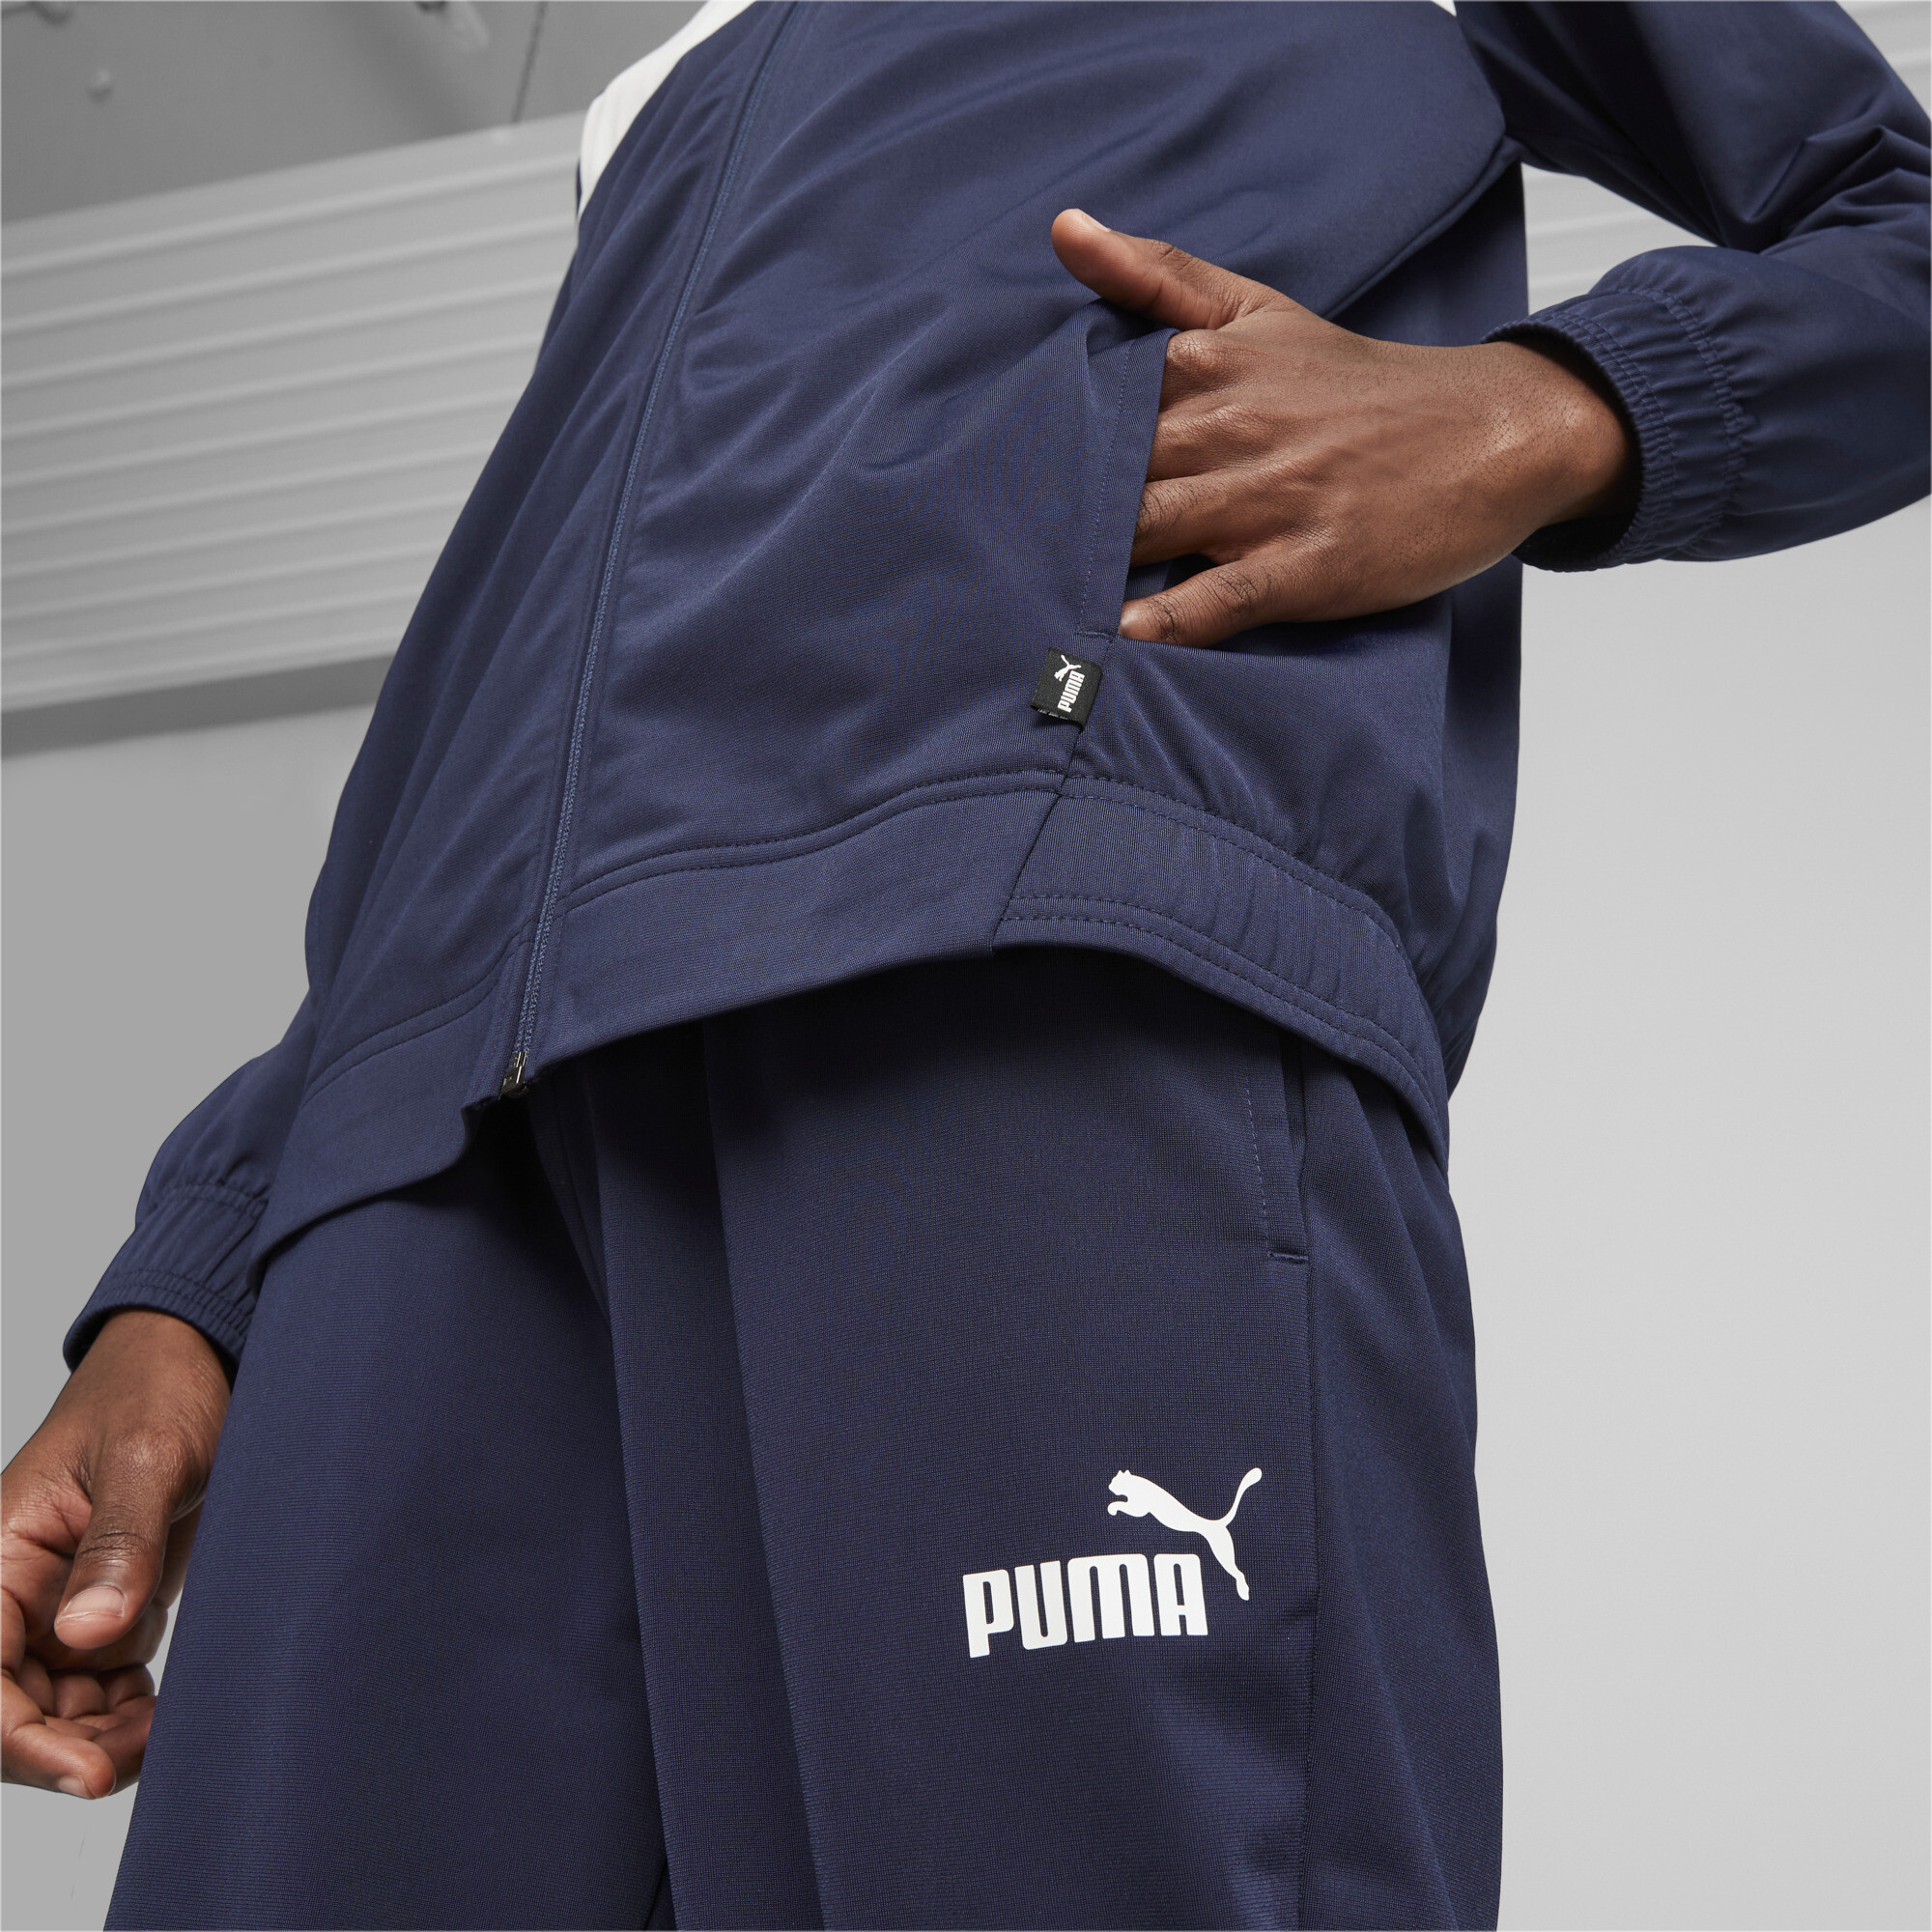 Men's Puma Men's Poly Tracksuit, Blue, Size XS, Clothing